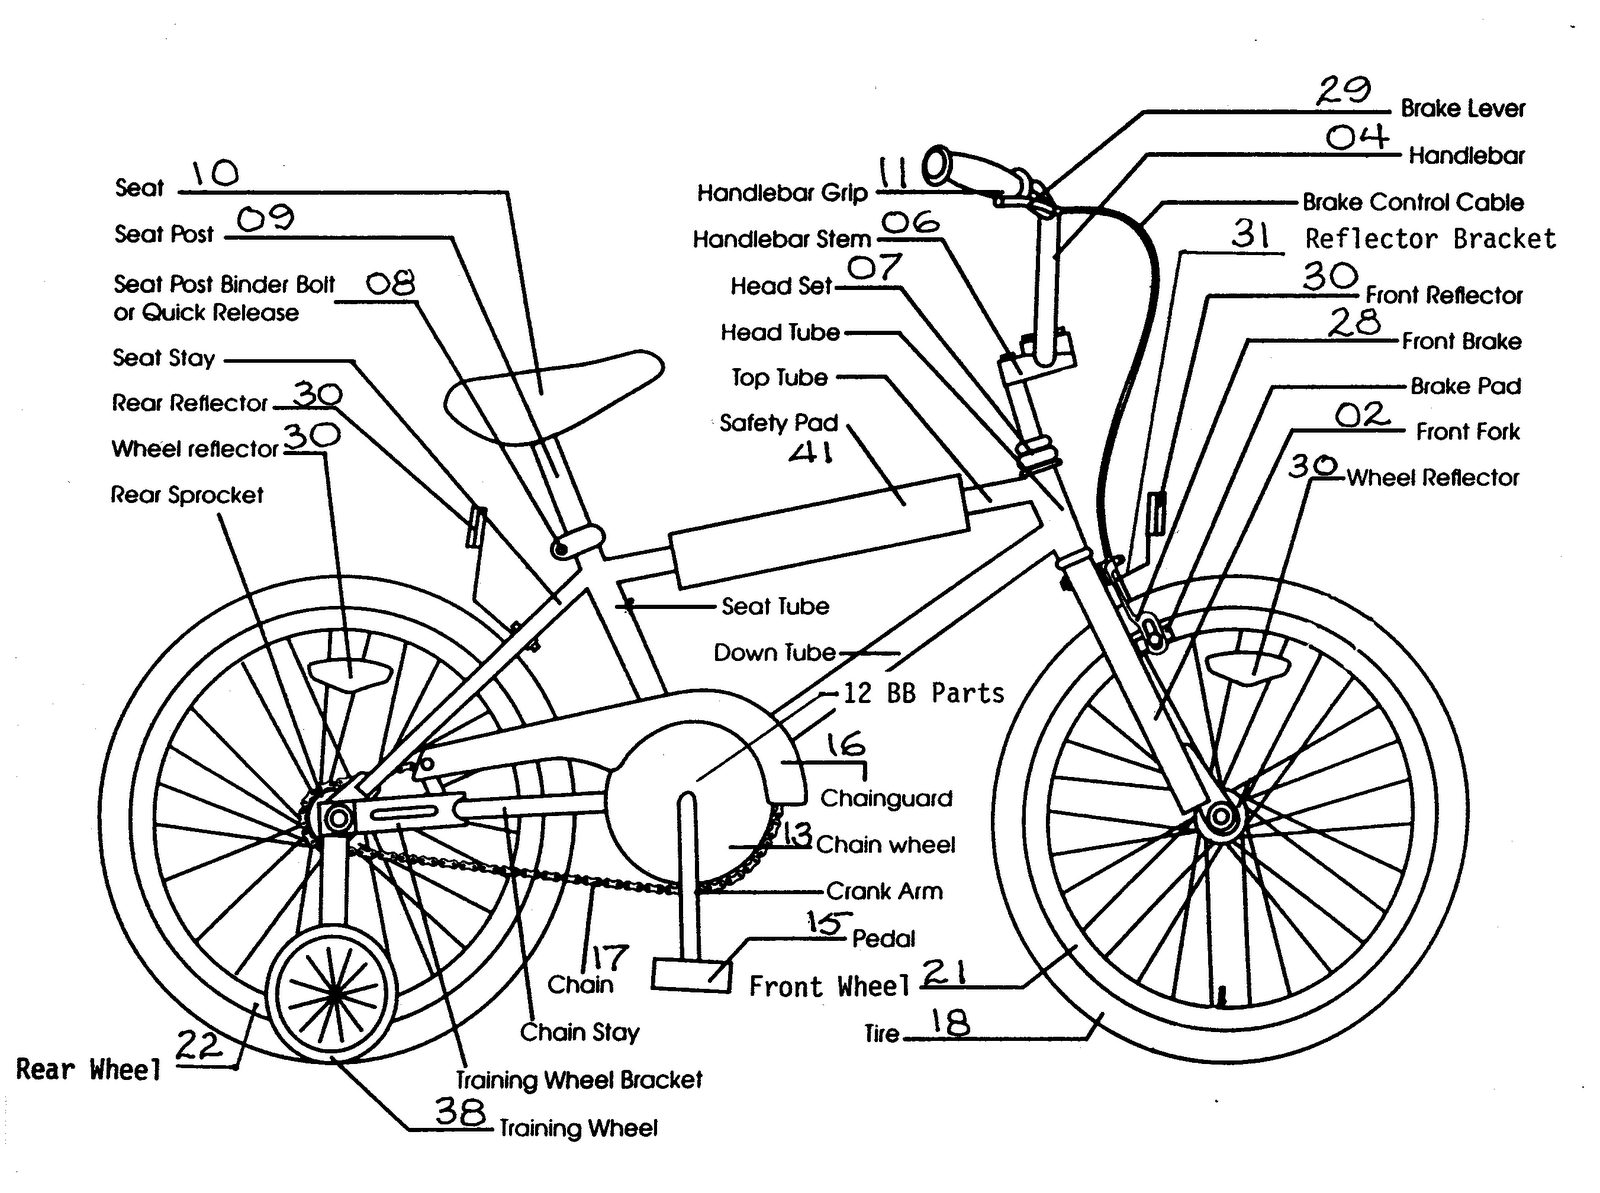 Схема велосипеда с названием деталей стелс. Схема каретки детского велосипеда. Строение шоссейного велосипеда. Устройство велосипеда схема для детей. Схема сборки велосипеда